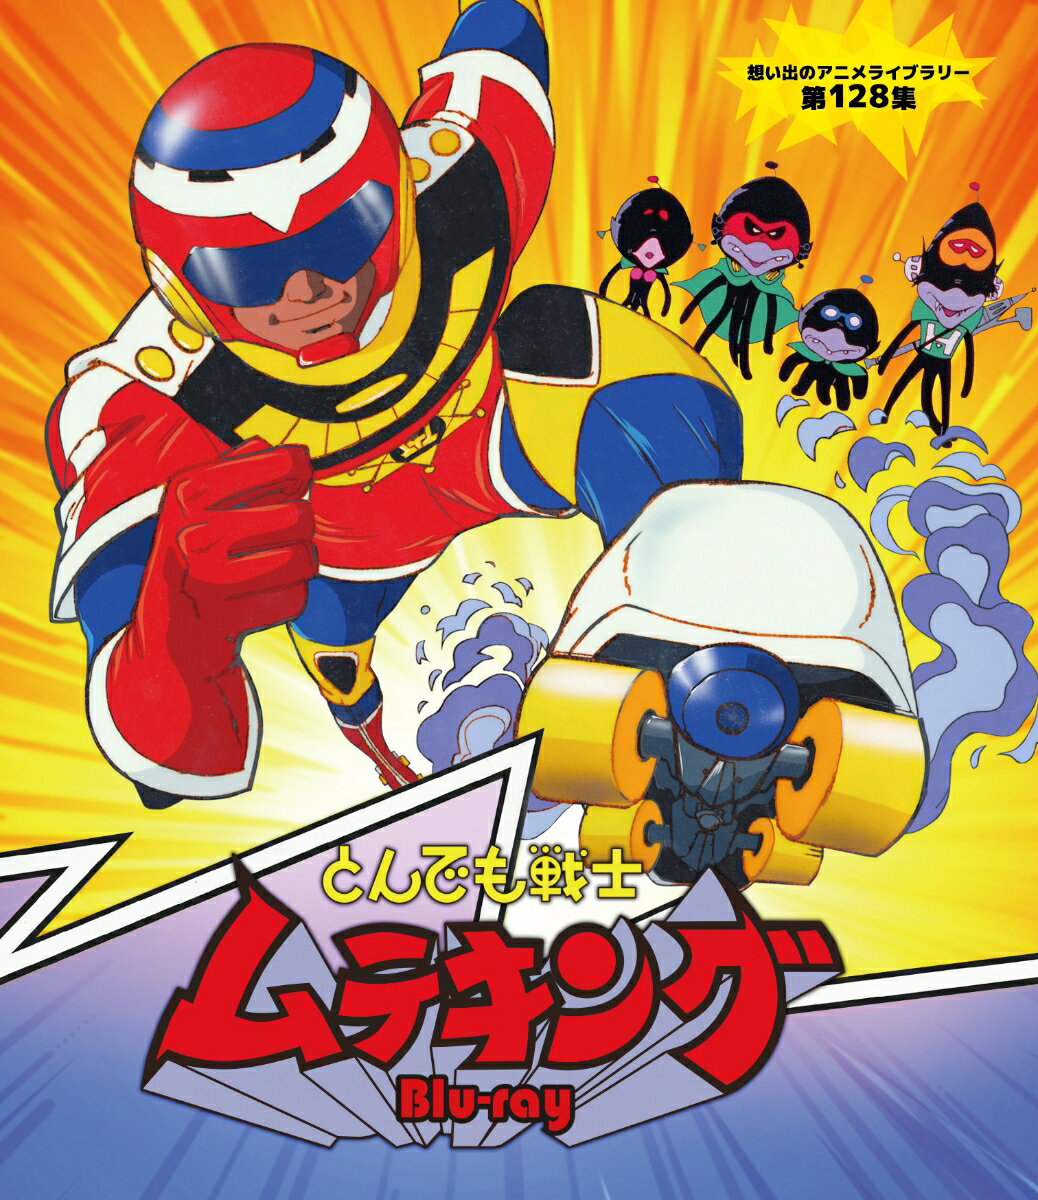 とんでも戦士ムテキング Blu-ray【想い出のアニメライブラリー 第128集】【Blu-ray】